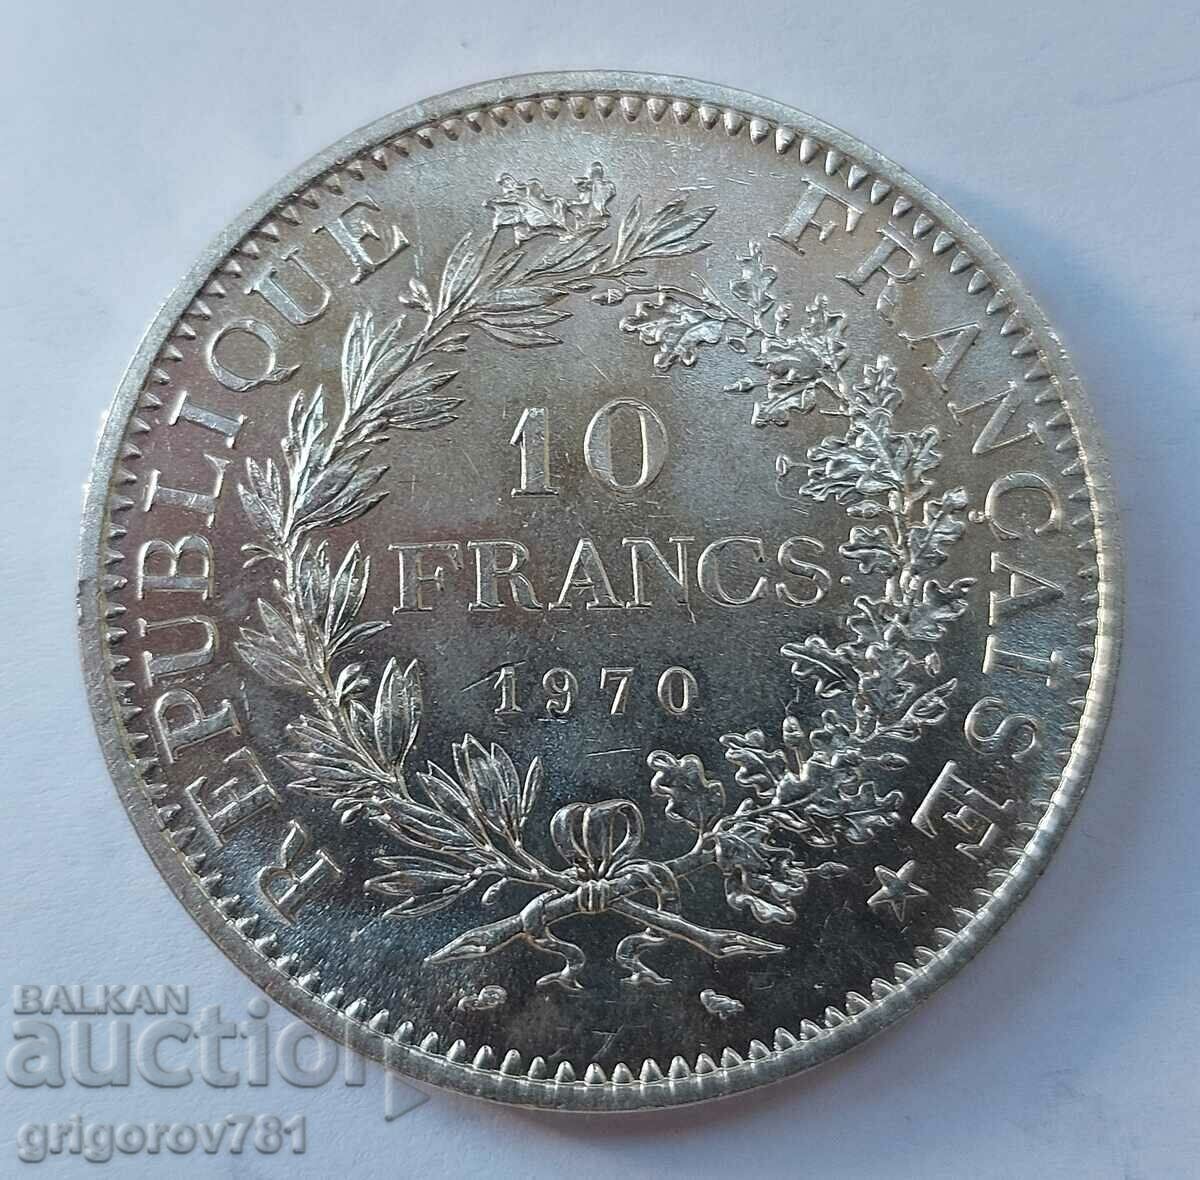 10 Franci Argint Franta 1970 - Moneda de argint #27